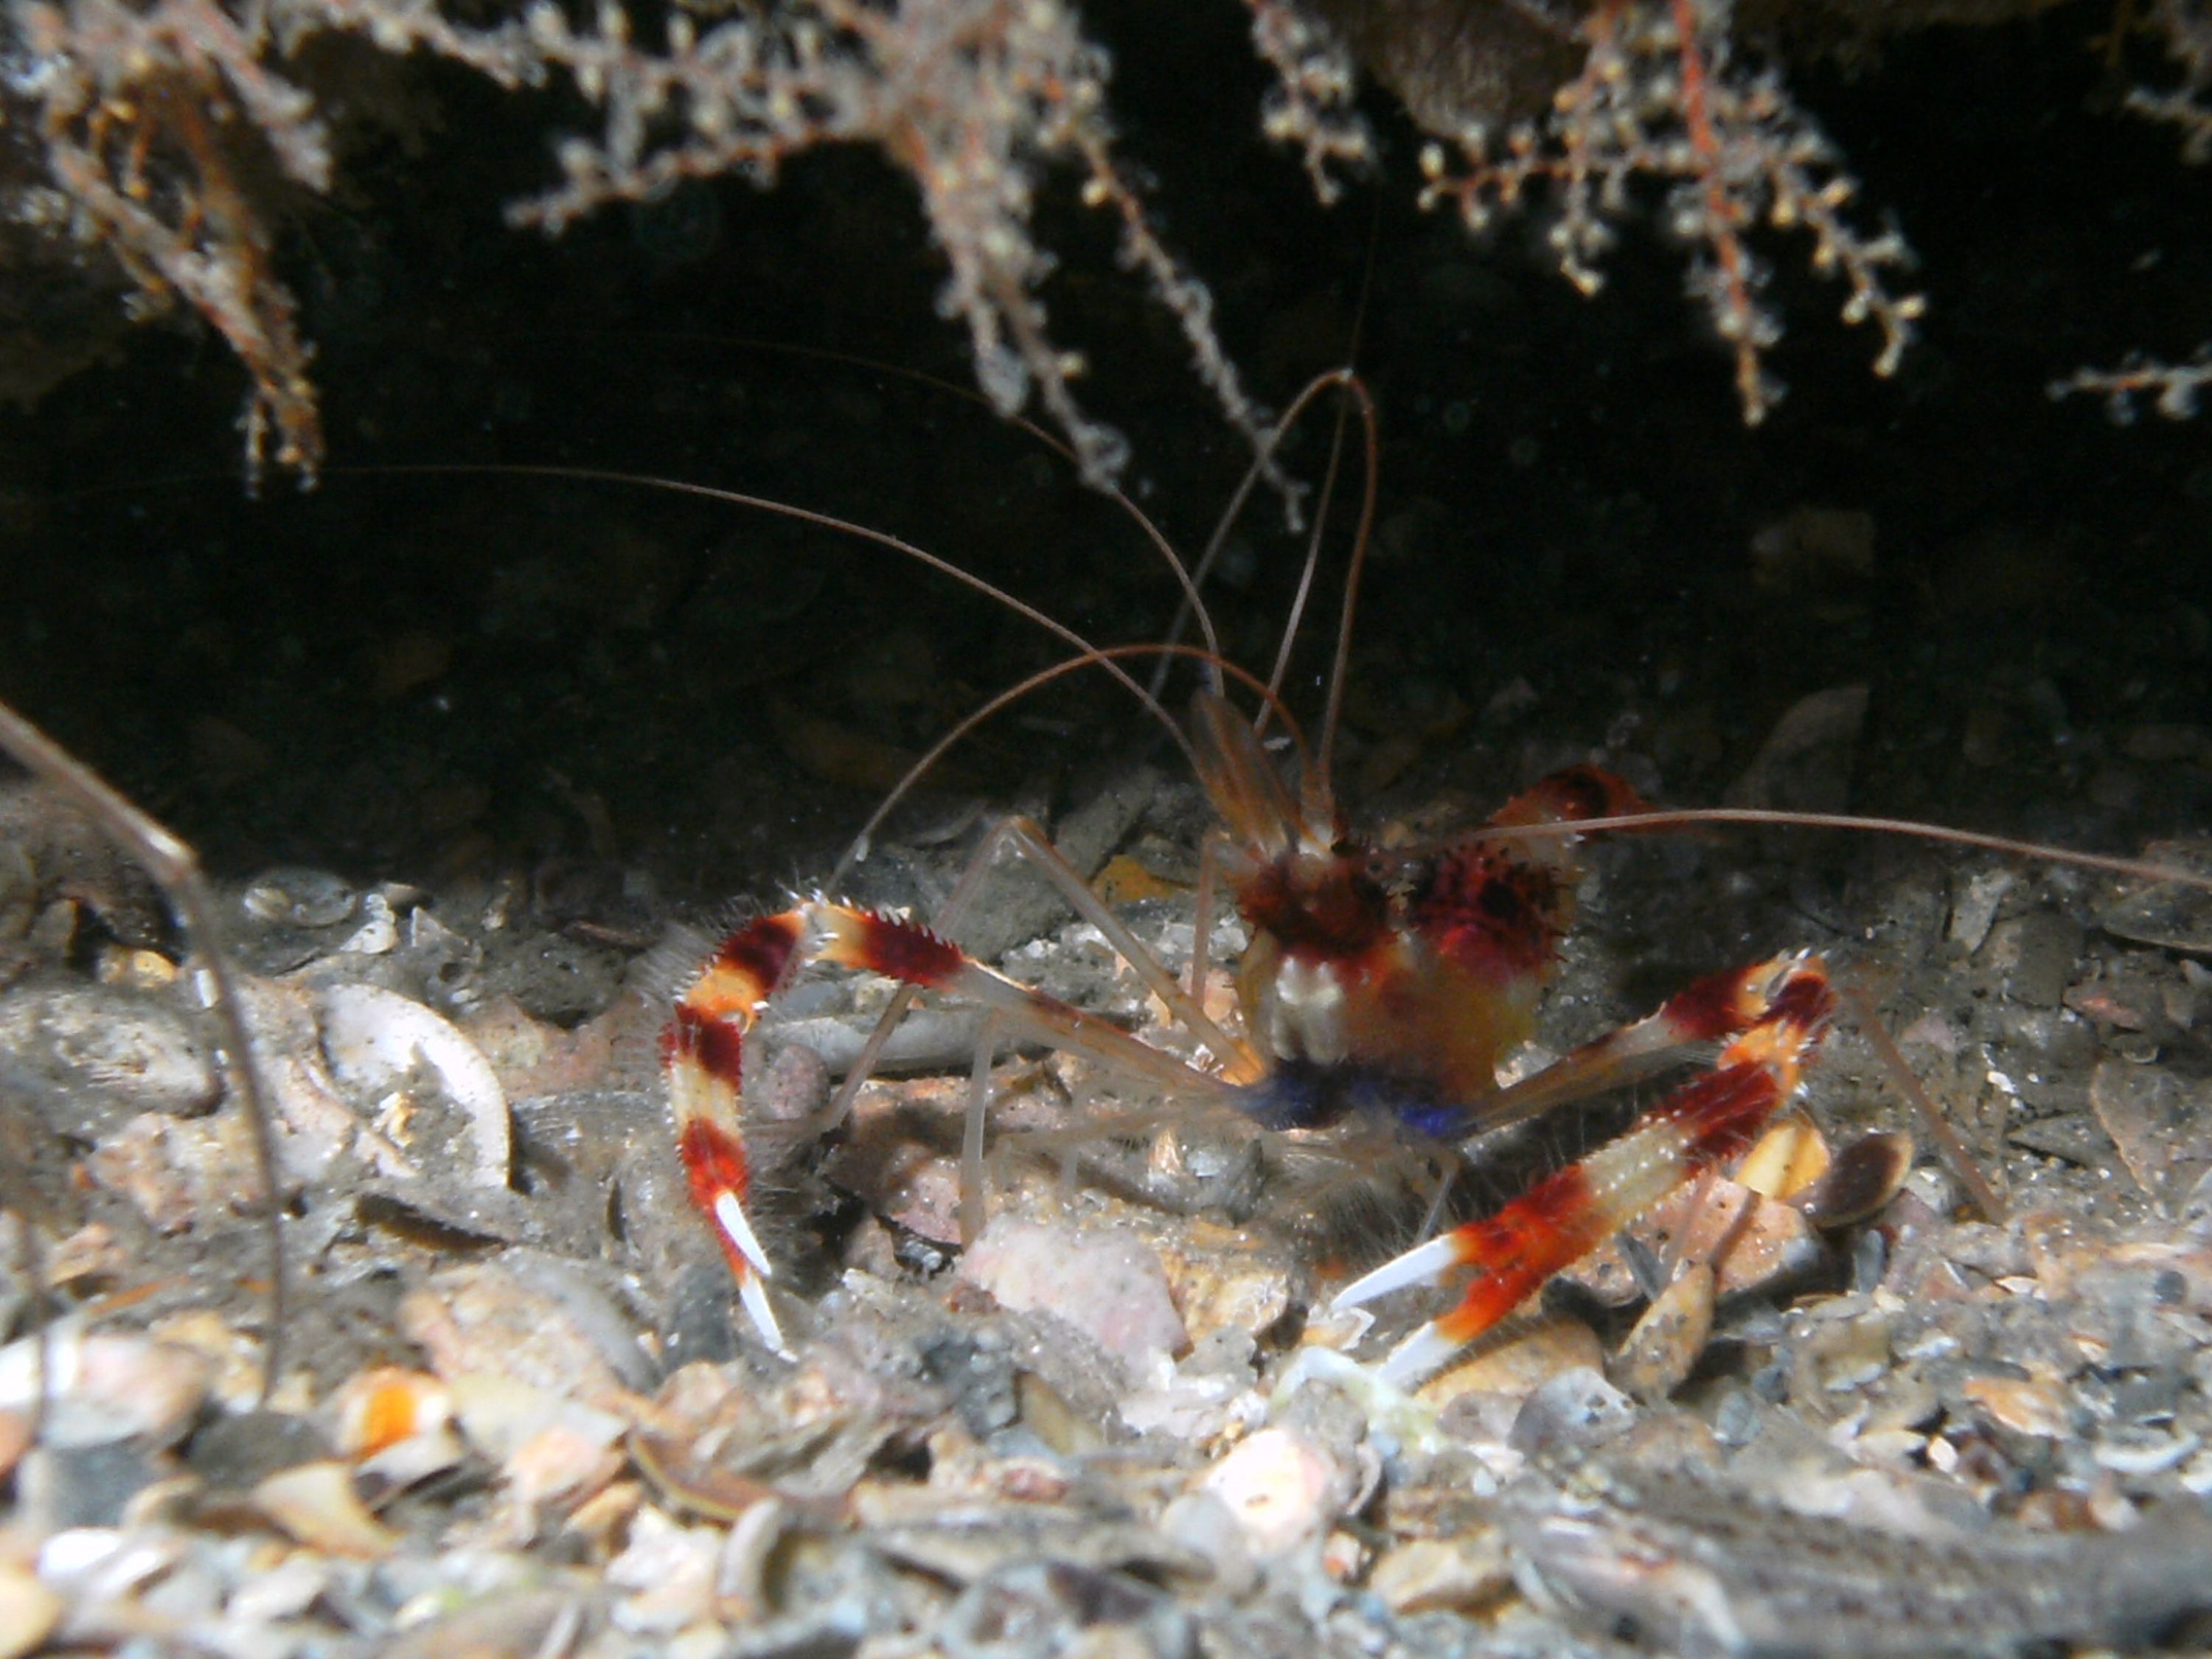 banded shrimp